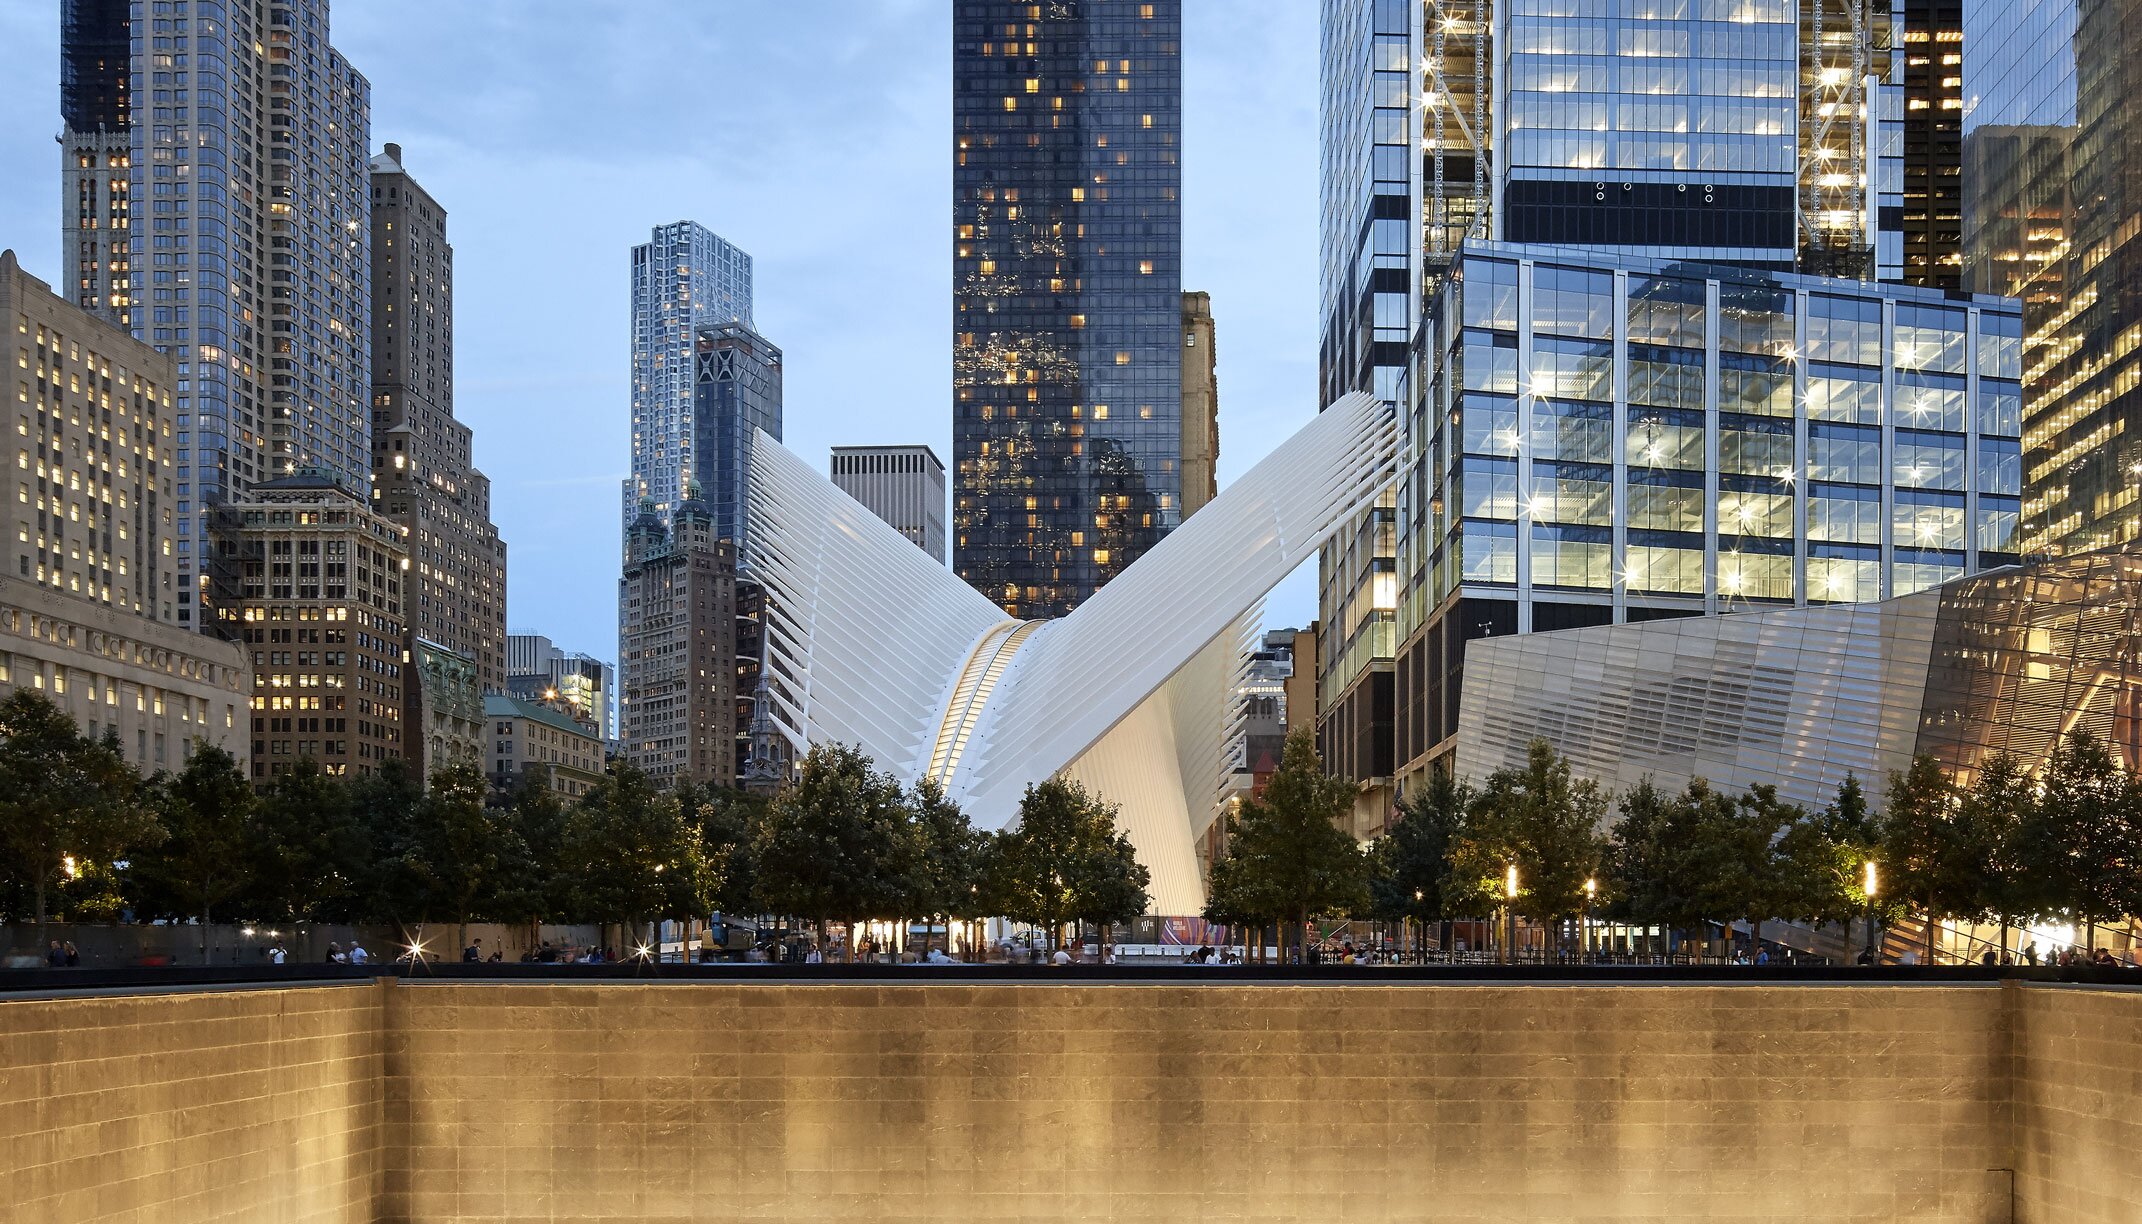 "Transportation Hub" Fassadengestaltung, Aluminium, New York | © Osugi, Shutterstock